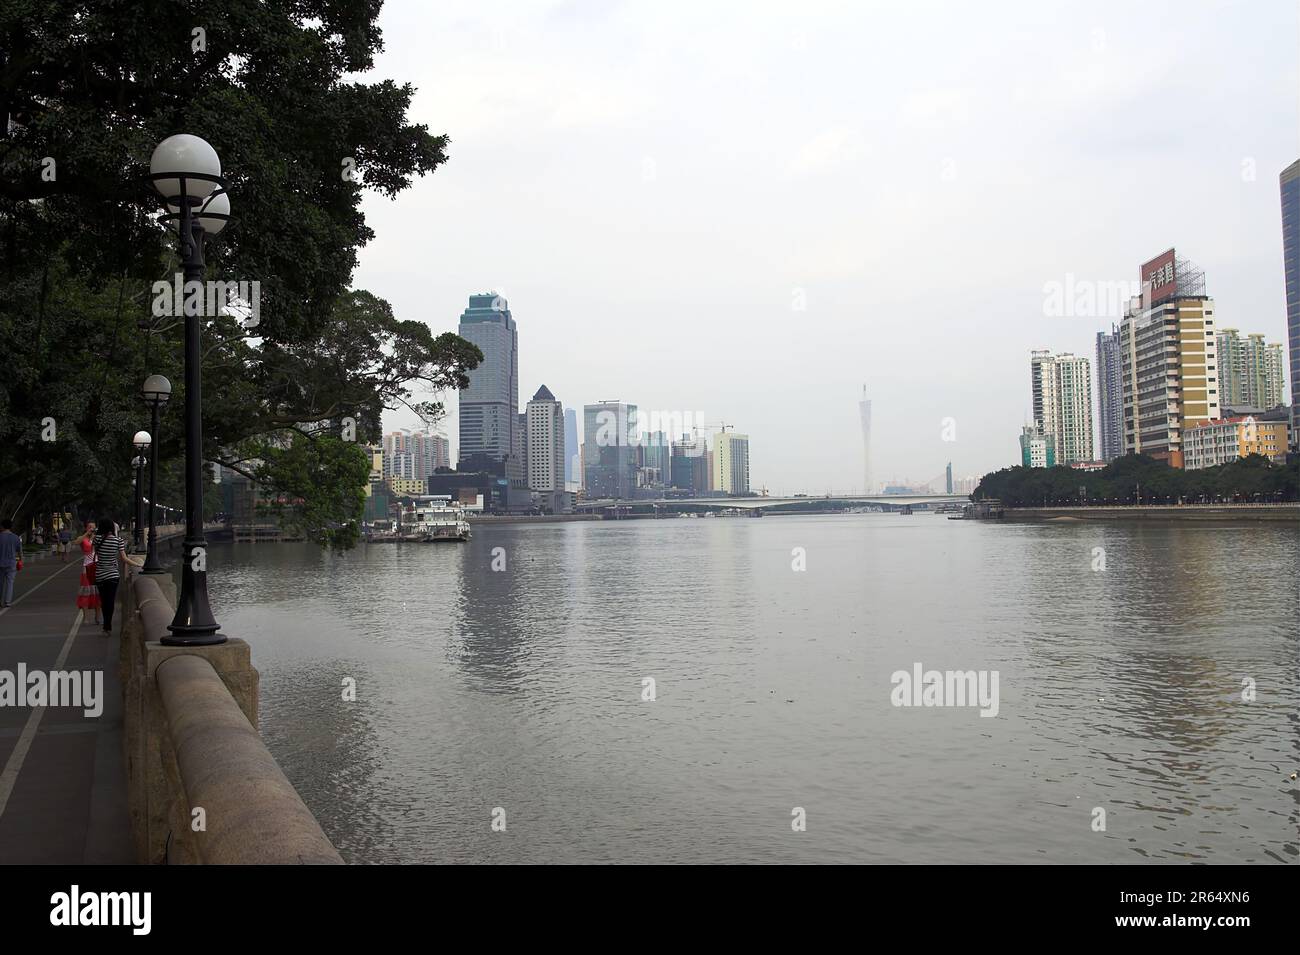 广州市 中國 Guangzhou, Cina; grattacieli sulle rive del fiume Pearl; Wolkenkratzer am Ufer des Perlflusses; Rascacielos a orillas del Río Pearl Foto Stock